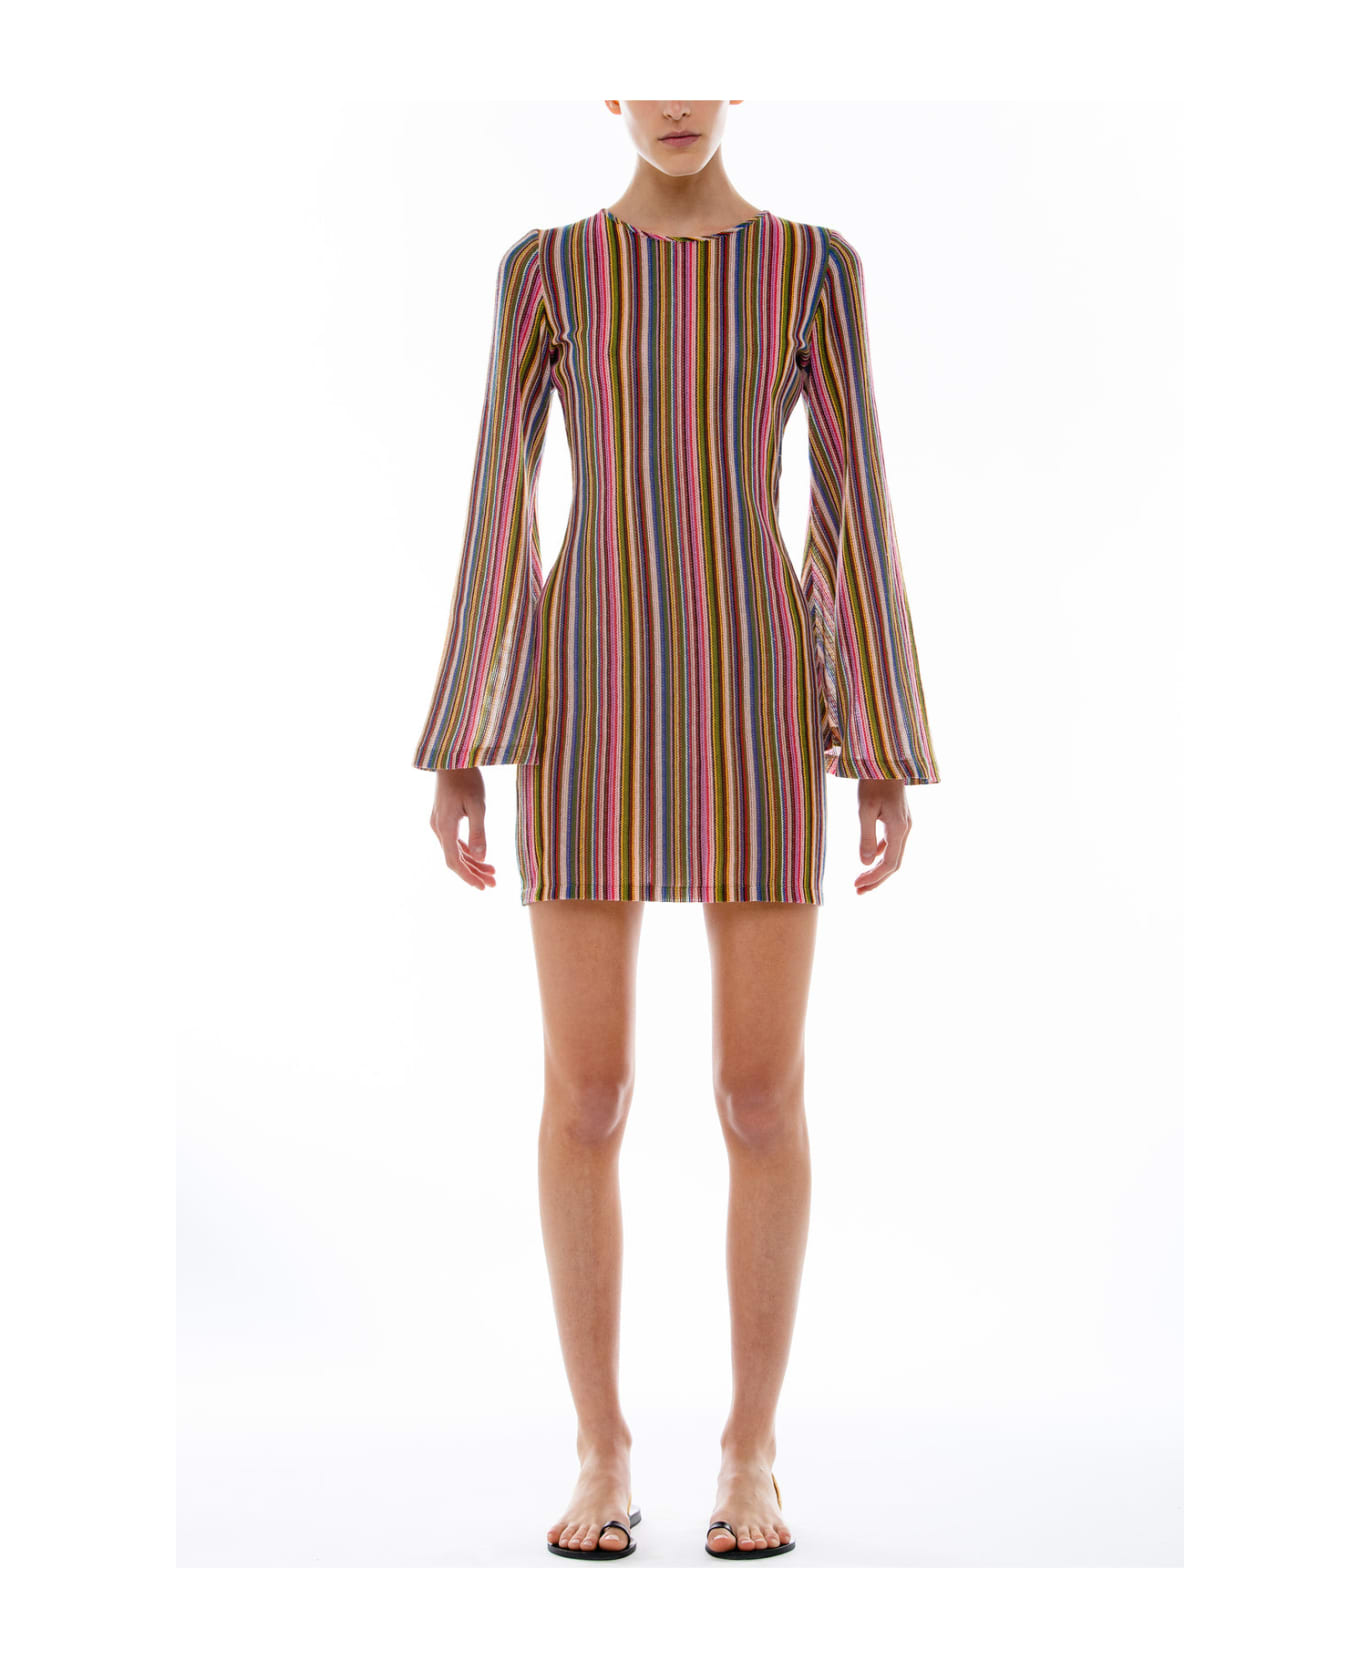 Amotea Courmayeur Dress Short In Multicolor Jersey - Multicolor